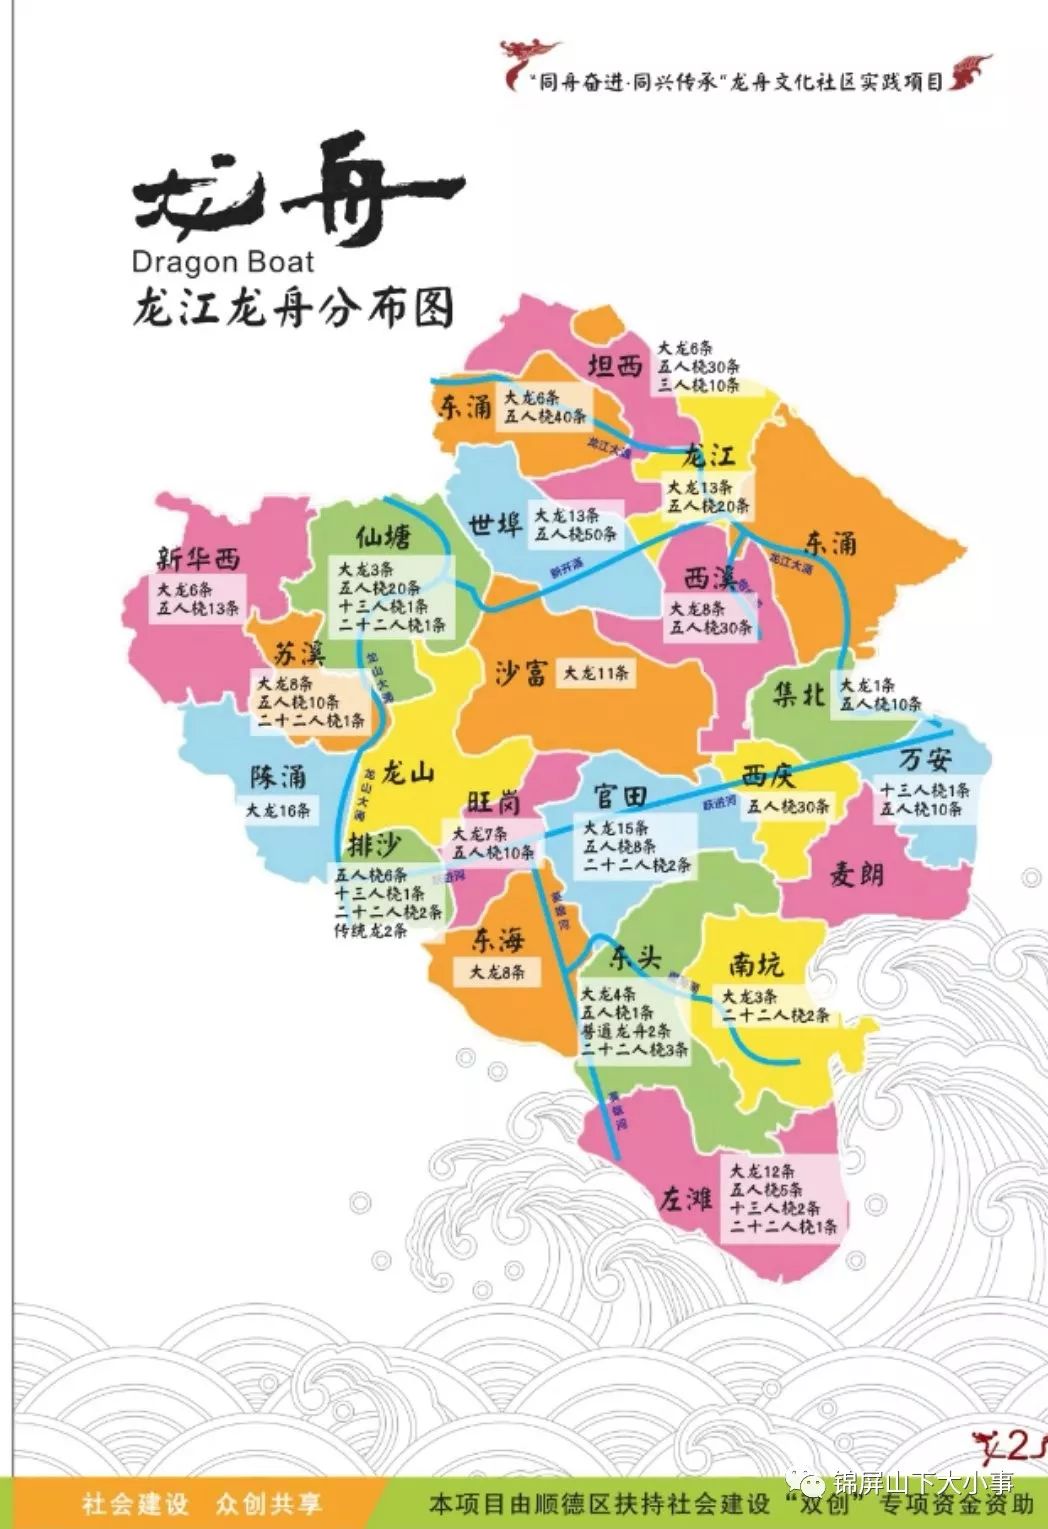 广东省地图顺德龙江图片